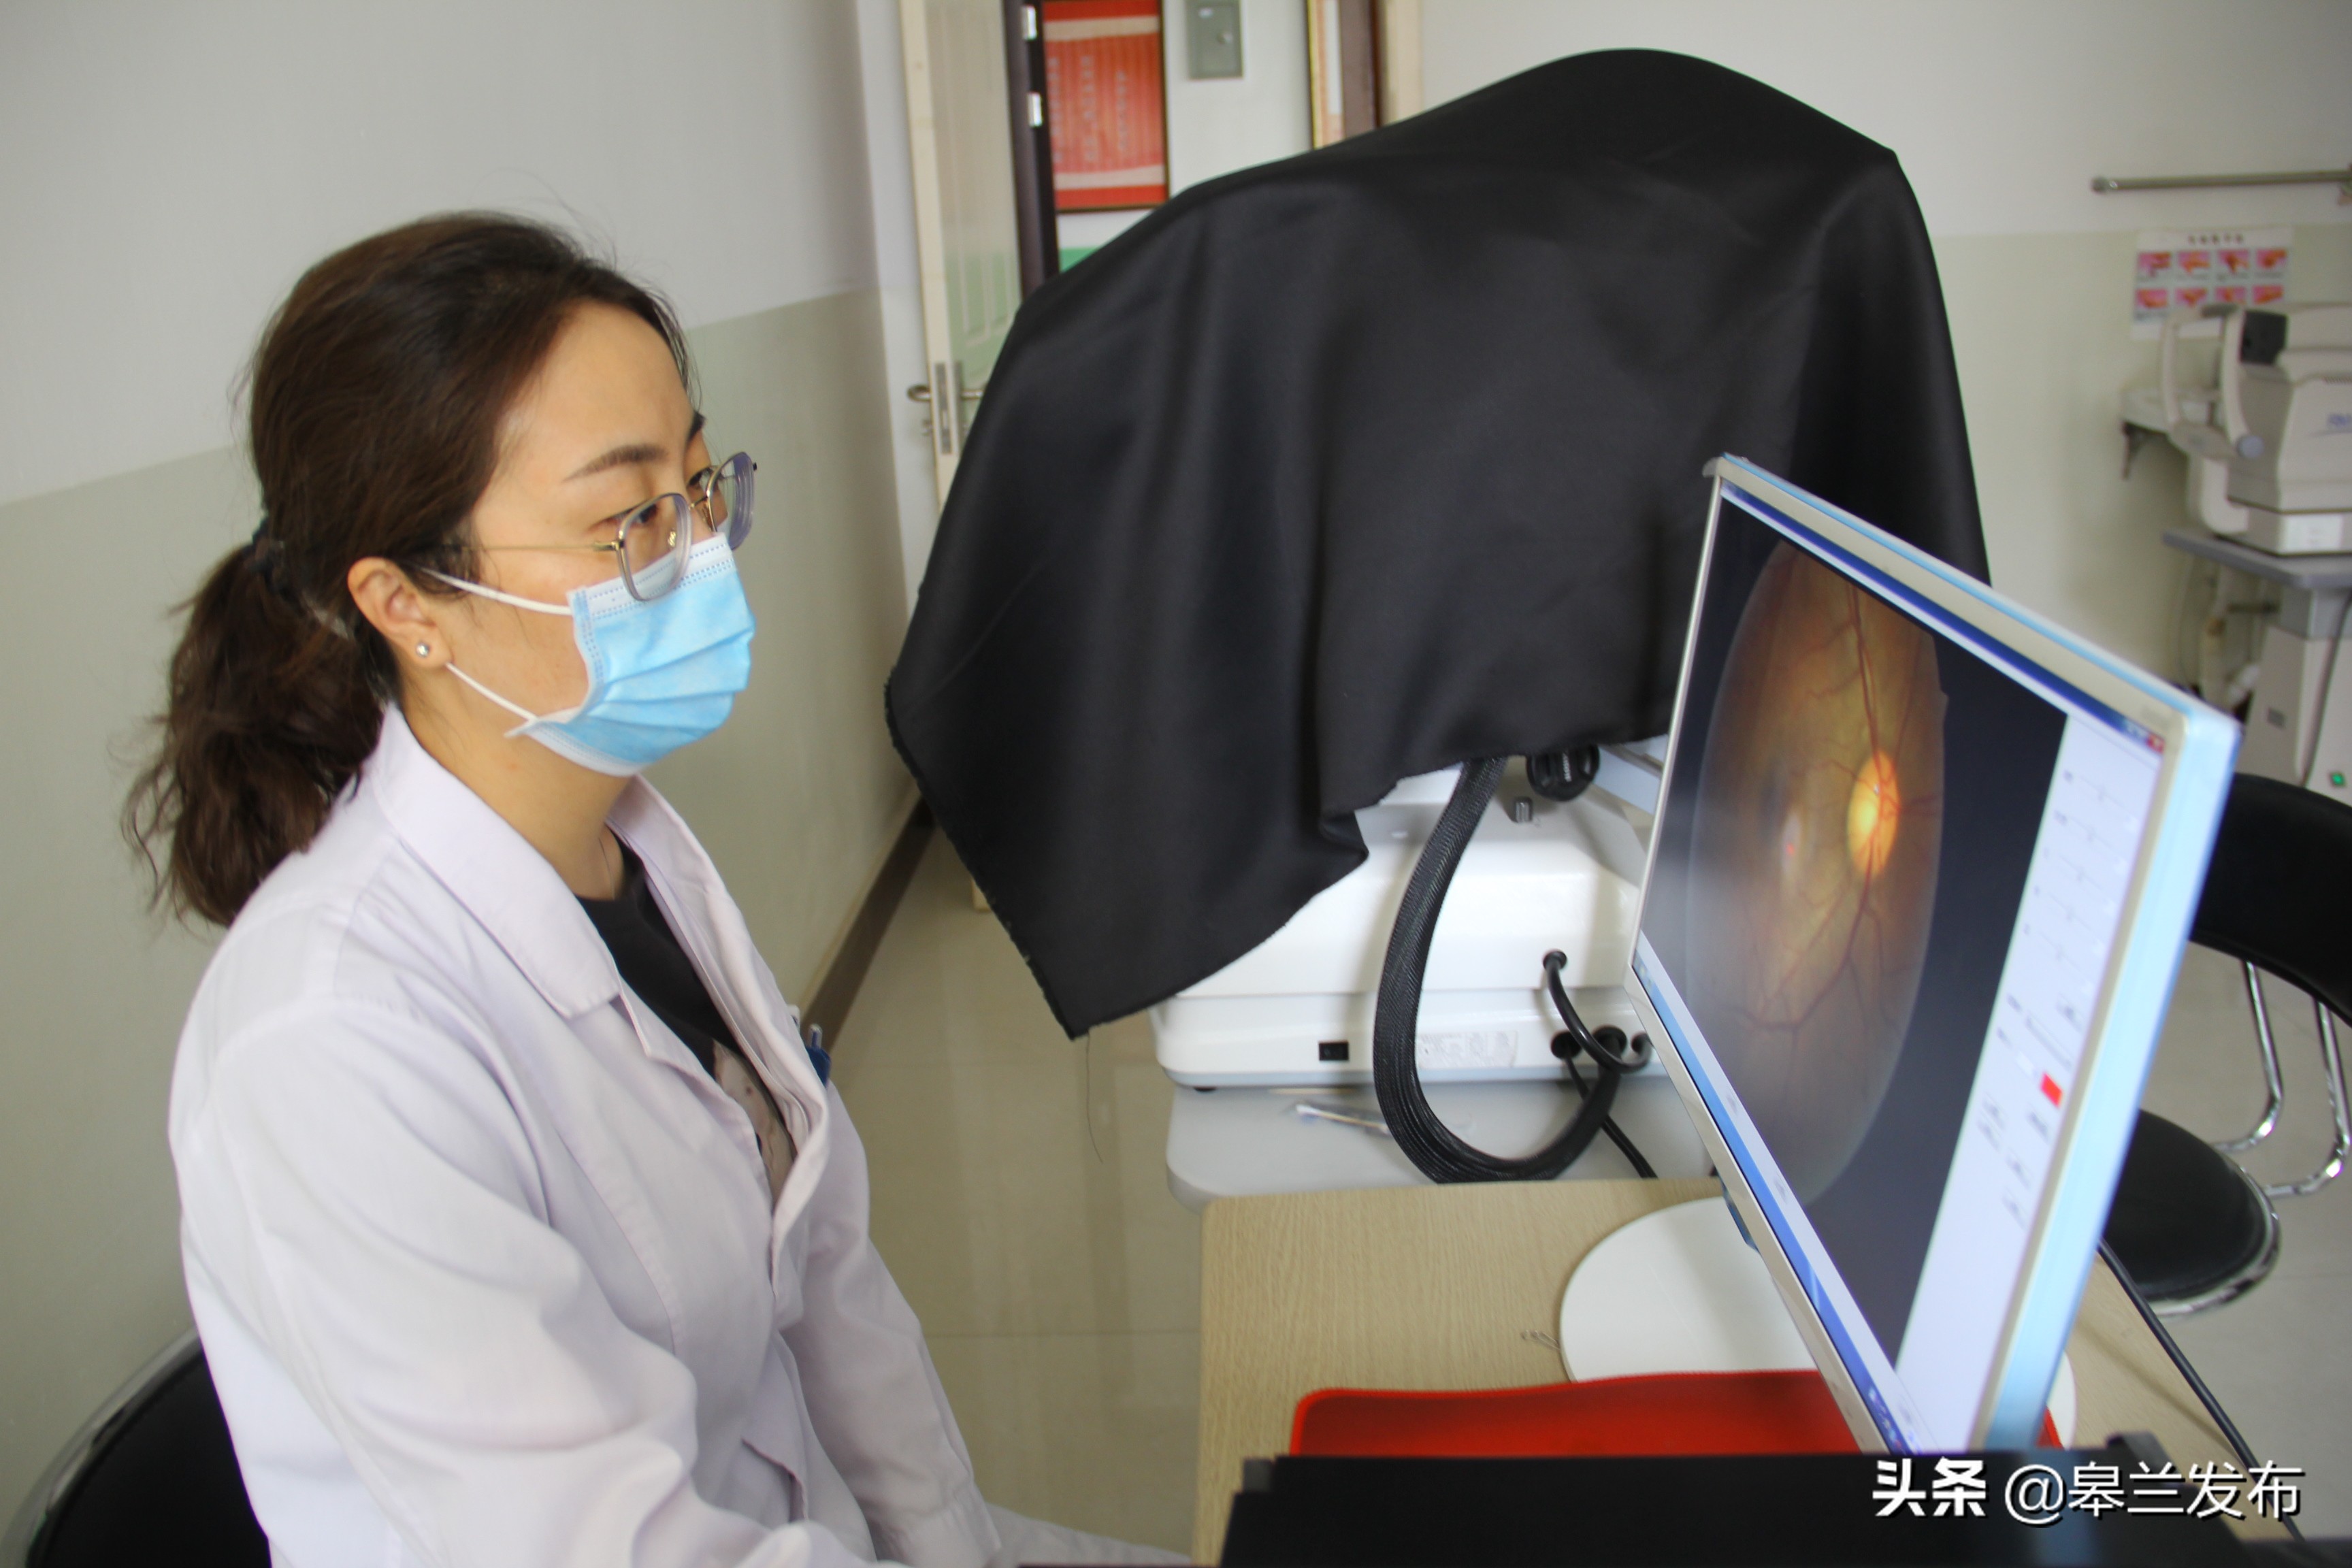 皋兰县人民医院开展多项眼部疾病诊断治疗新技术